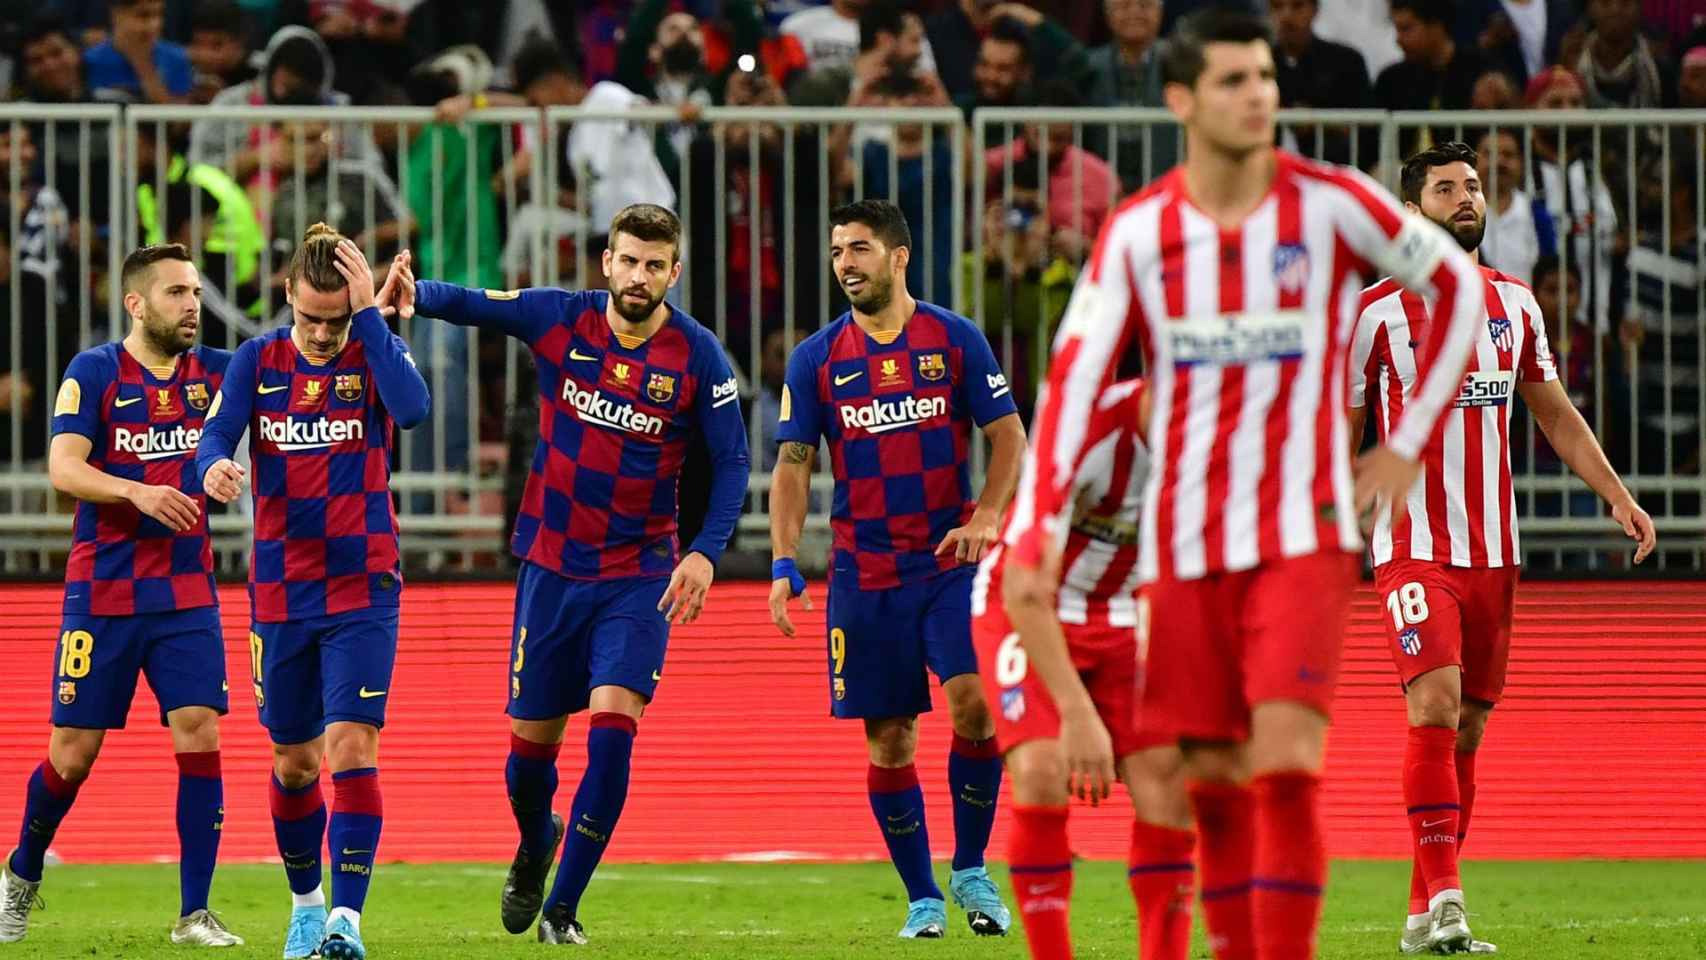 El Barça celebrando un gol contra el Atlético de Madrid en la Supercopa de España / EFE